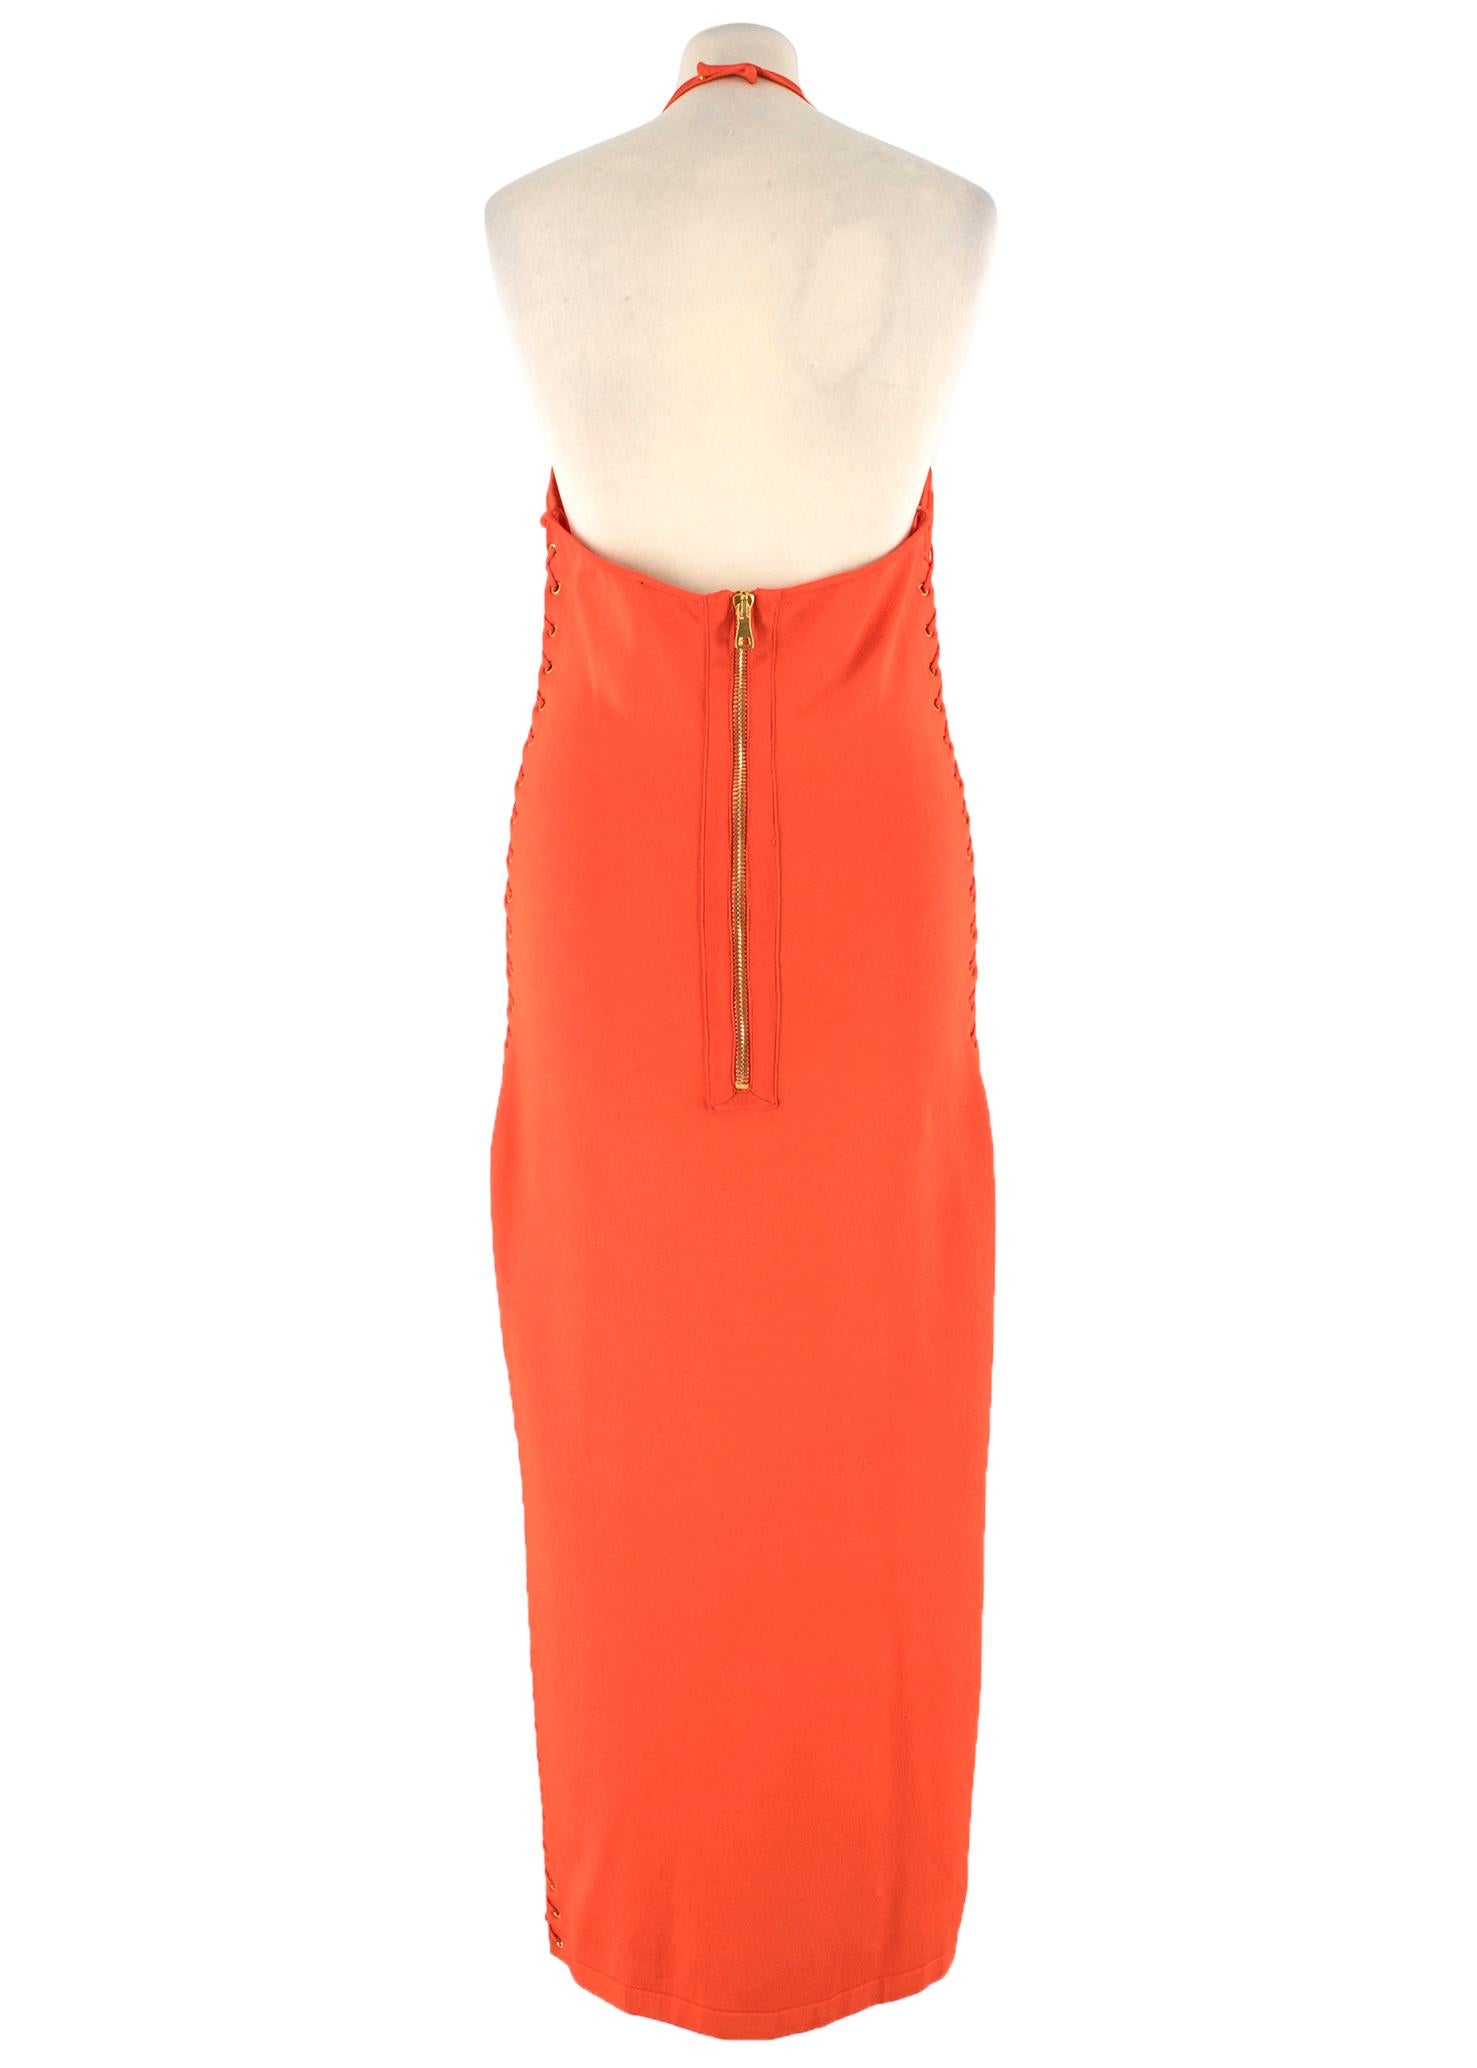 balmain orange dress